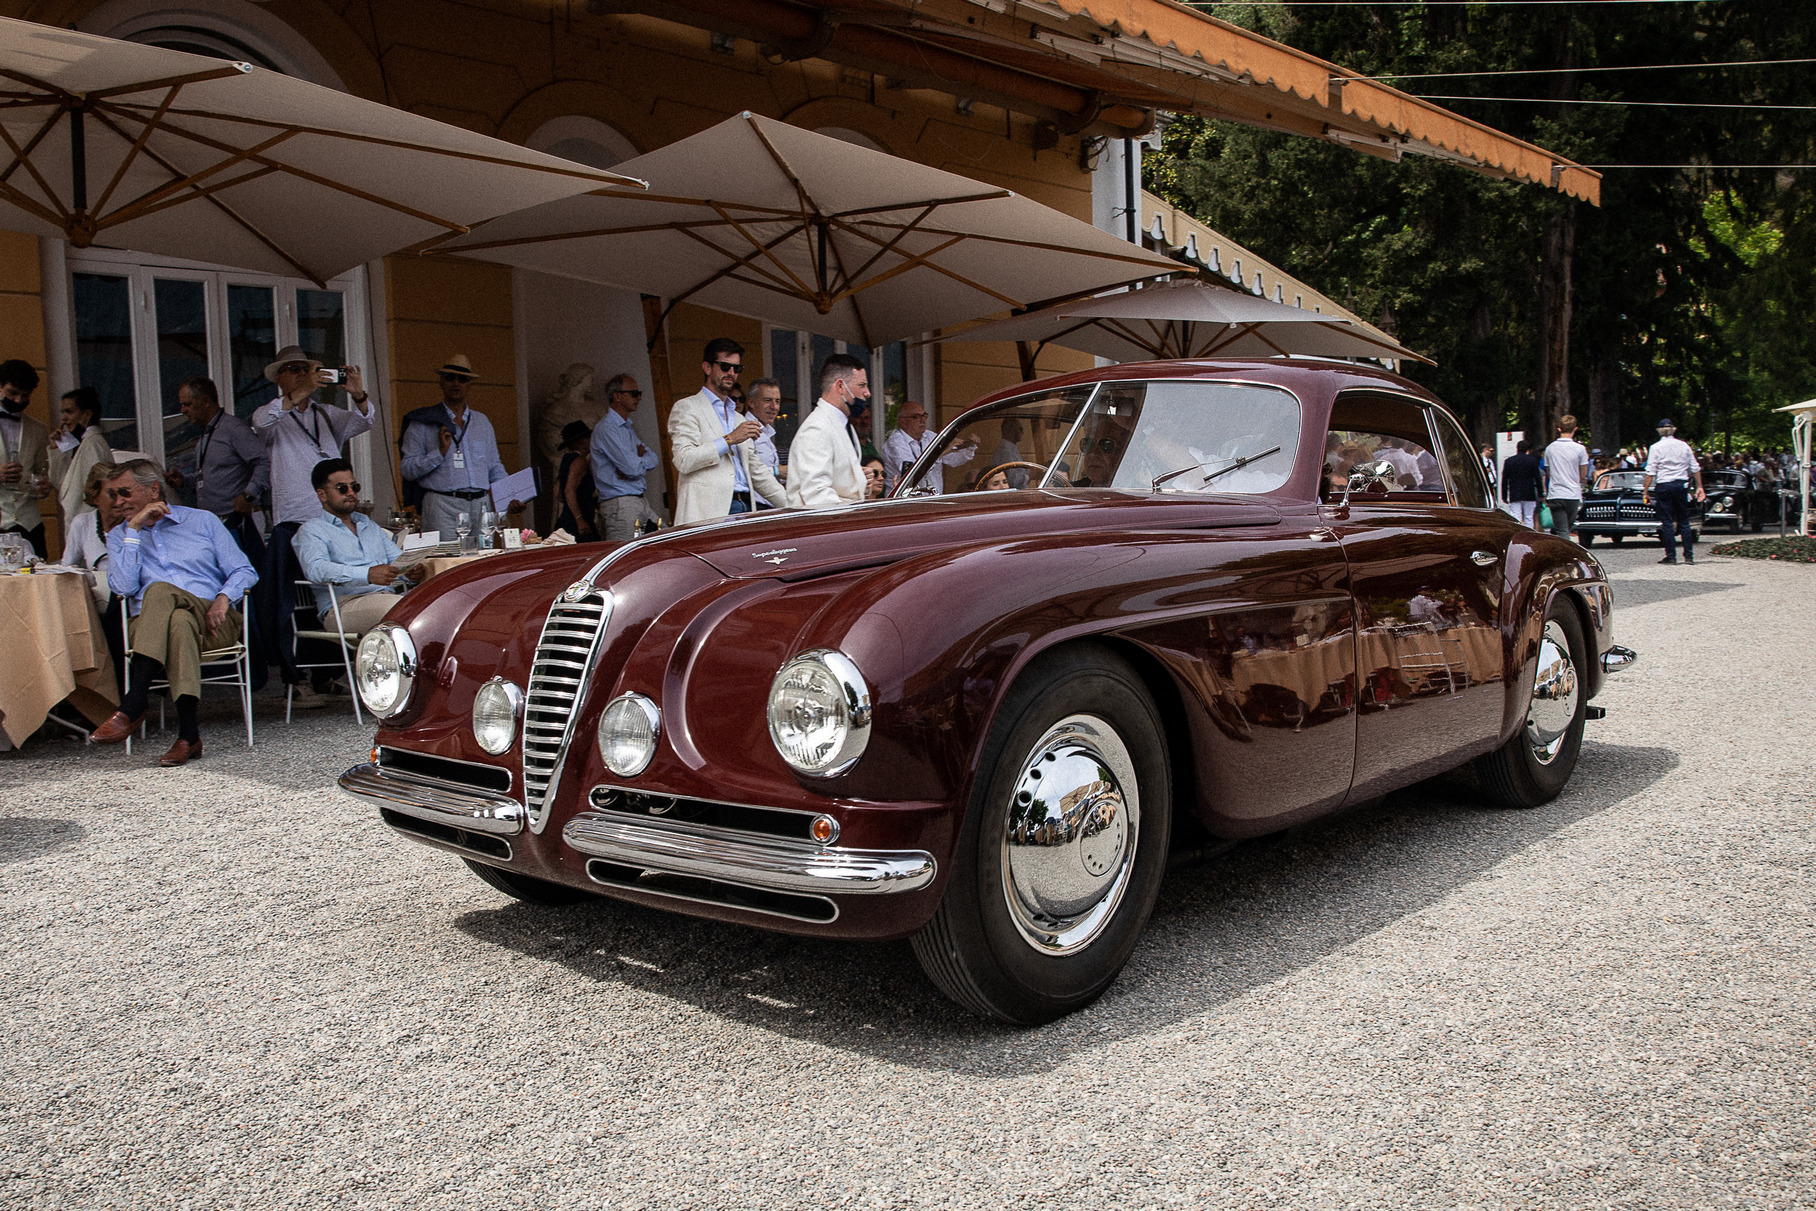 Точно такая же Alfa Romeo 6C 2500 SS c кузовом Carrozzeria Touring победила в Конкурсе элегантности Villa d'Este... когда была новой, в 1949 году. А эту машину 1950 года продали молодому клиенту из Неаполя, после чего она пропала на много лет. А ведь это настоящая редкость: таких машин построили всего 36 штук!